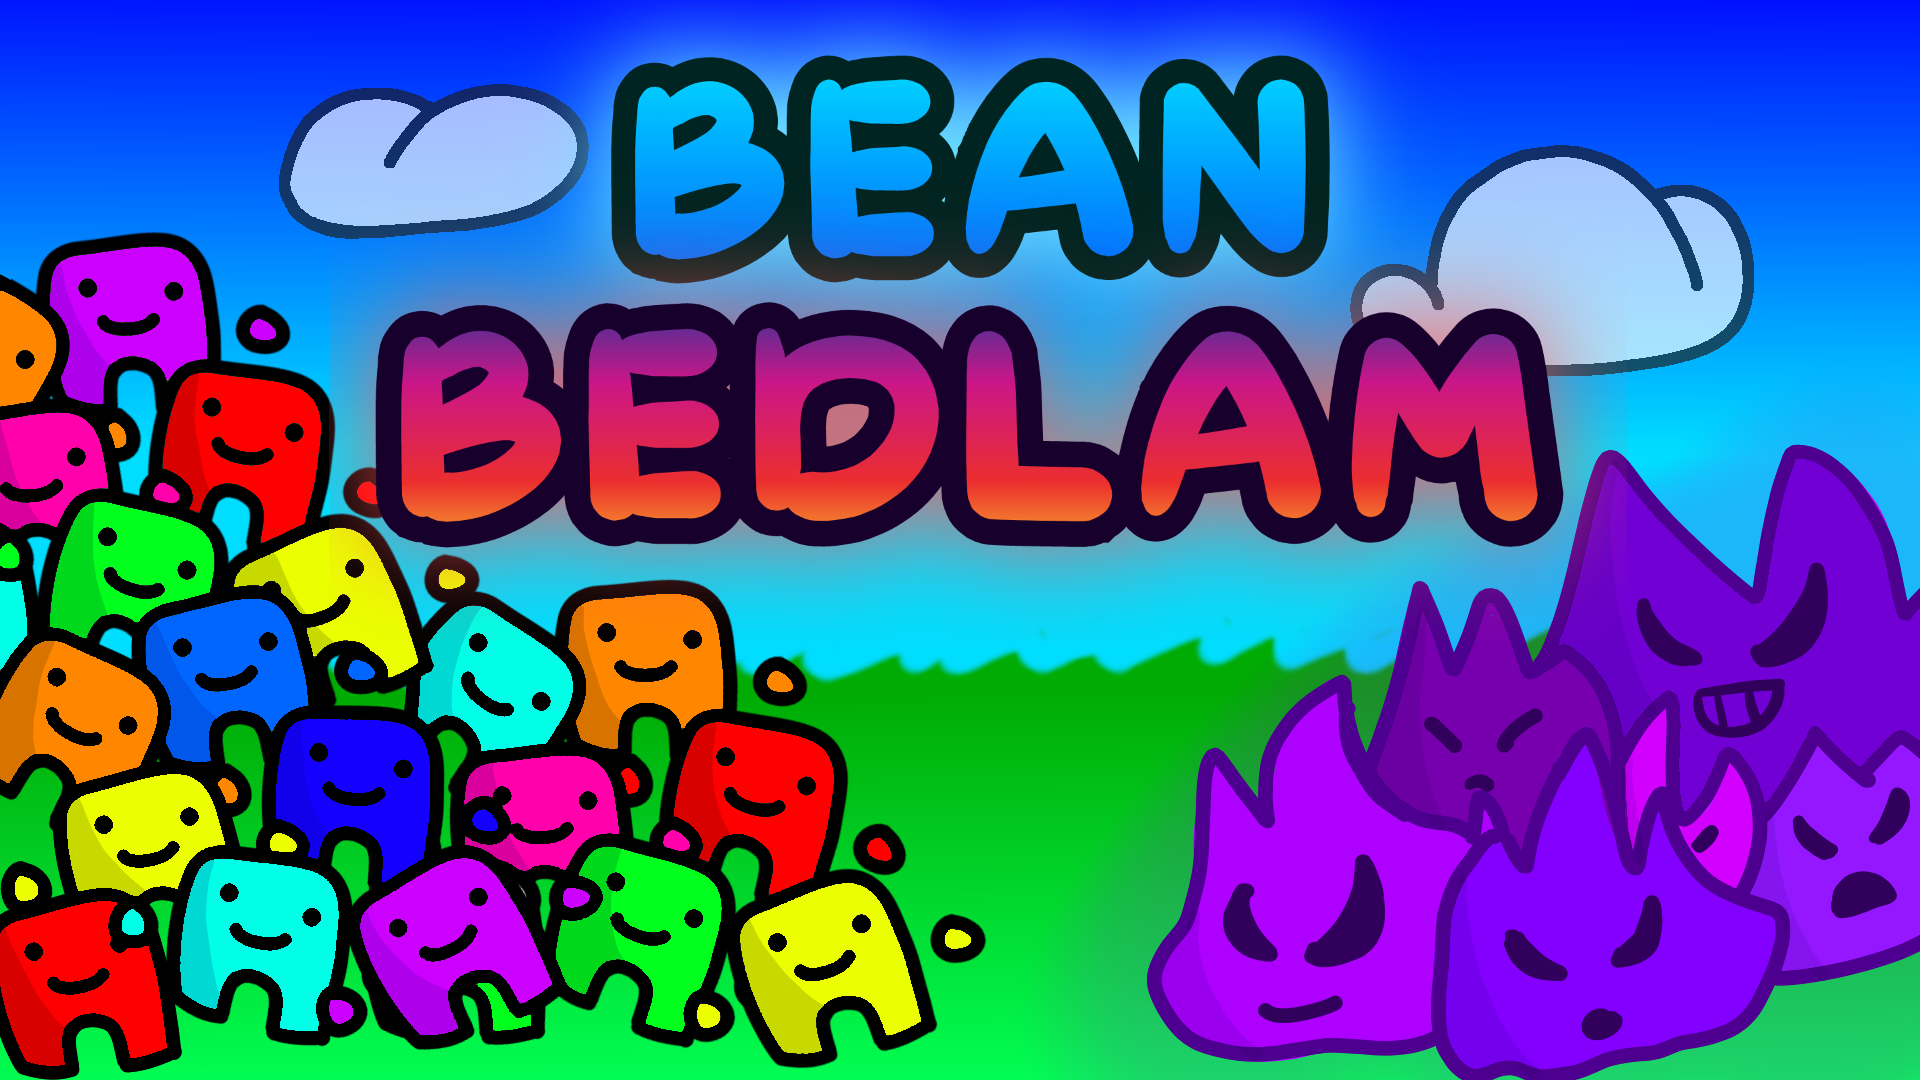 Bean Bedlam